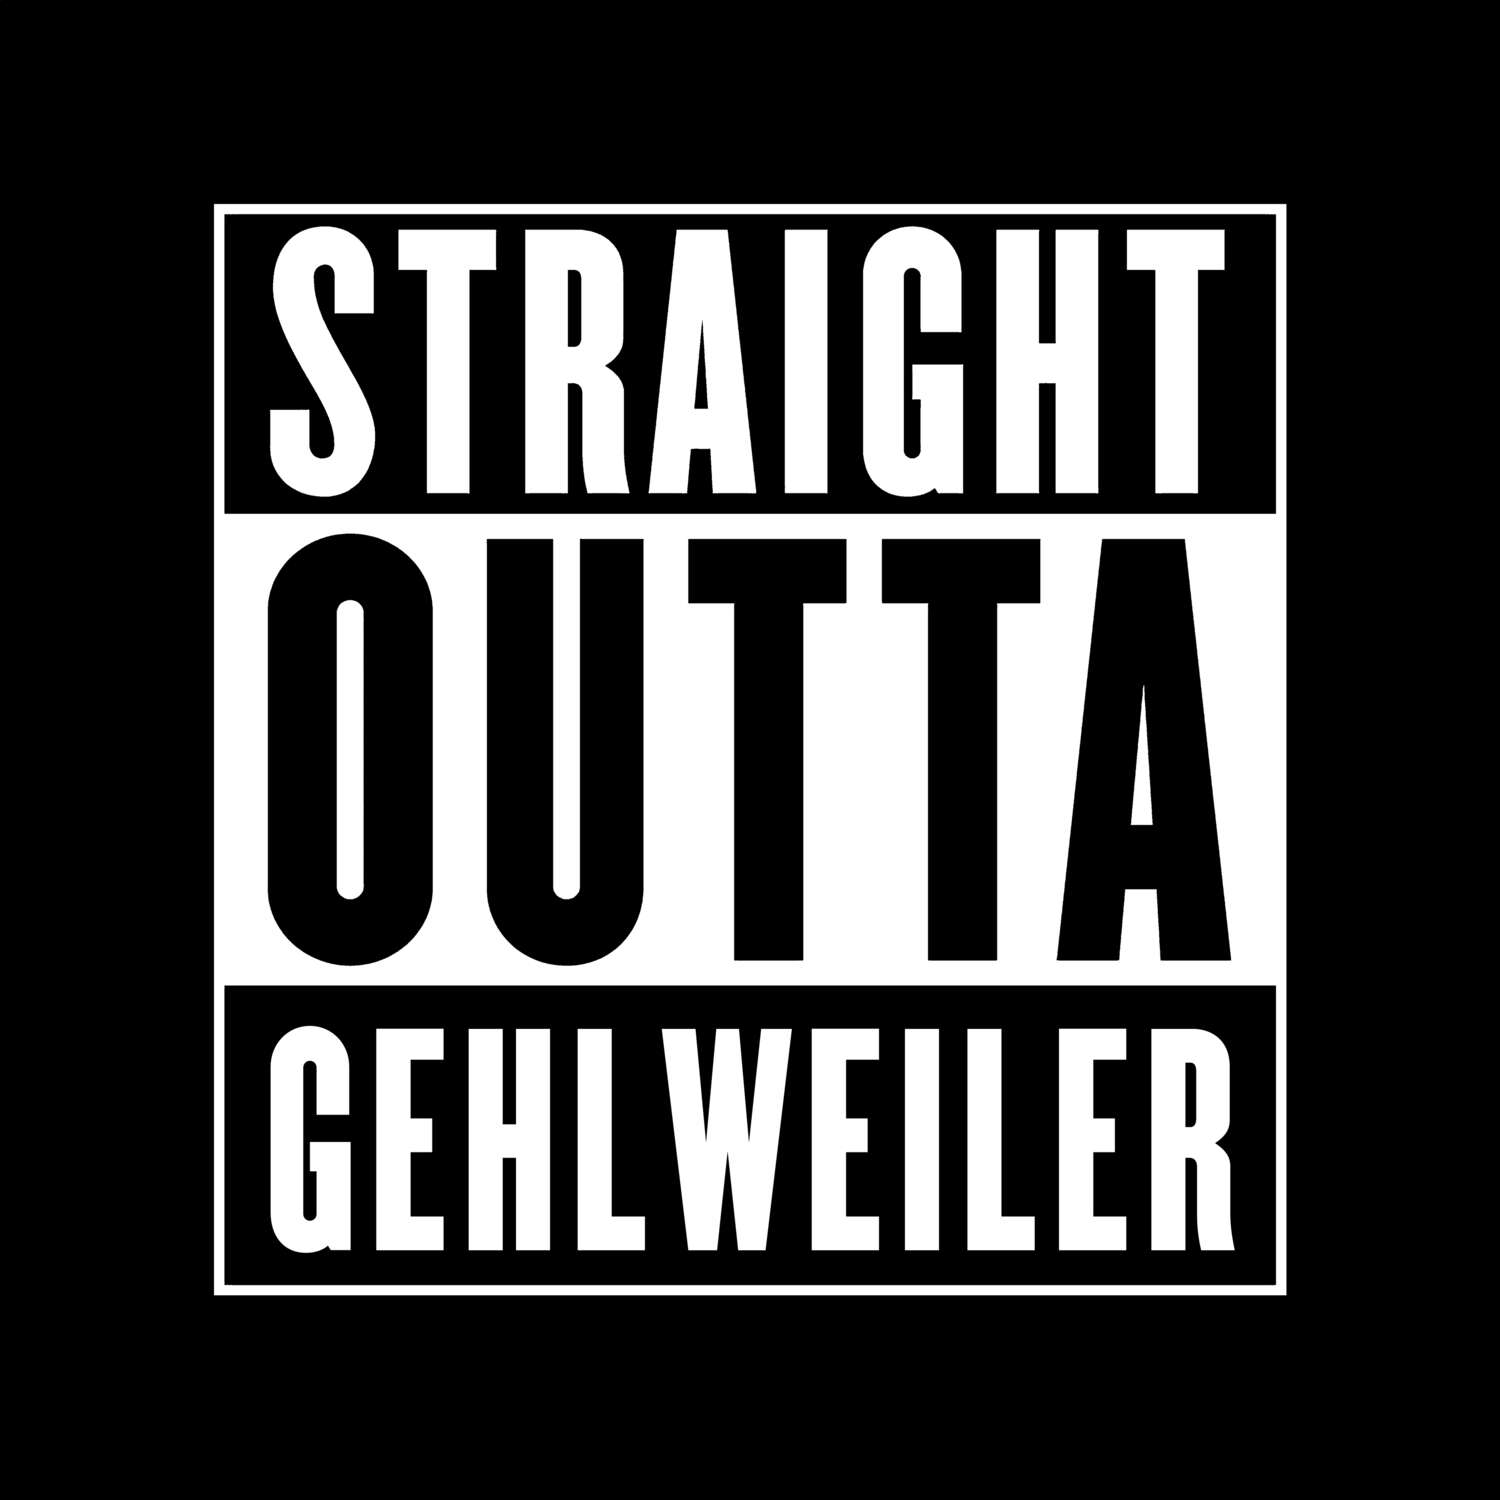 Gehlweiler T-Shirt »Straight Outta«